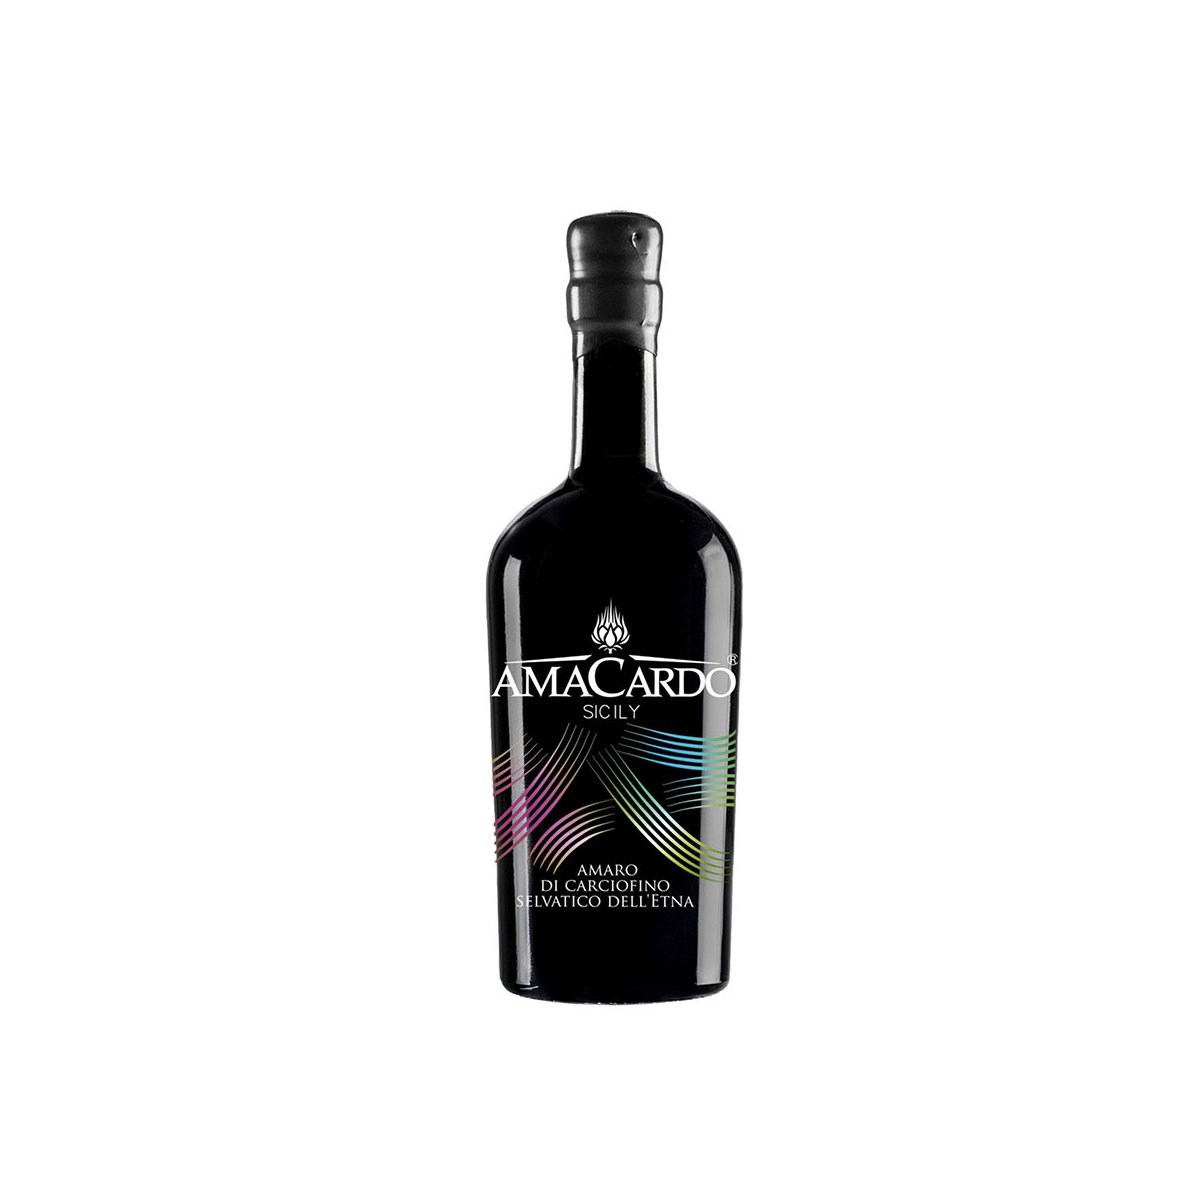 Amaro di Carciofino selvatico dell'Etna magnum  Amacardo Sicily - Sicilia